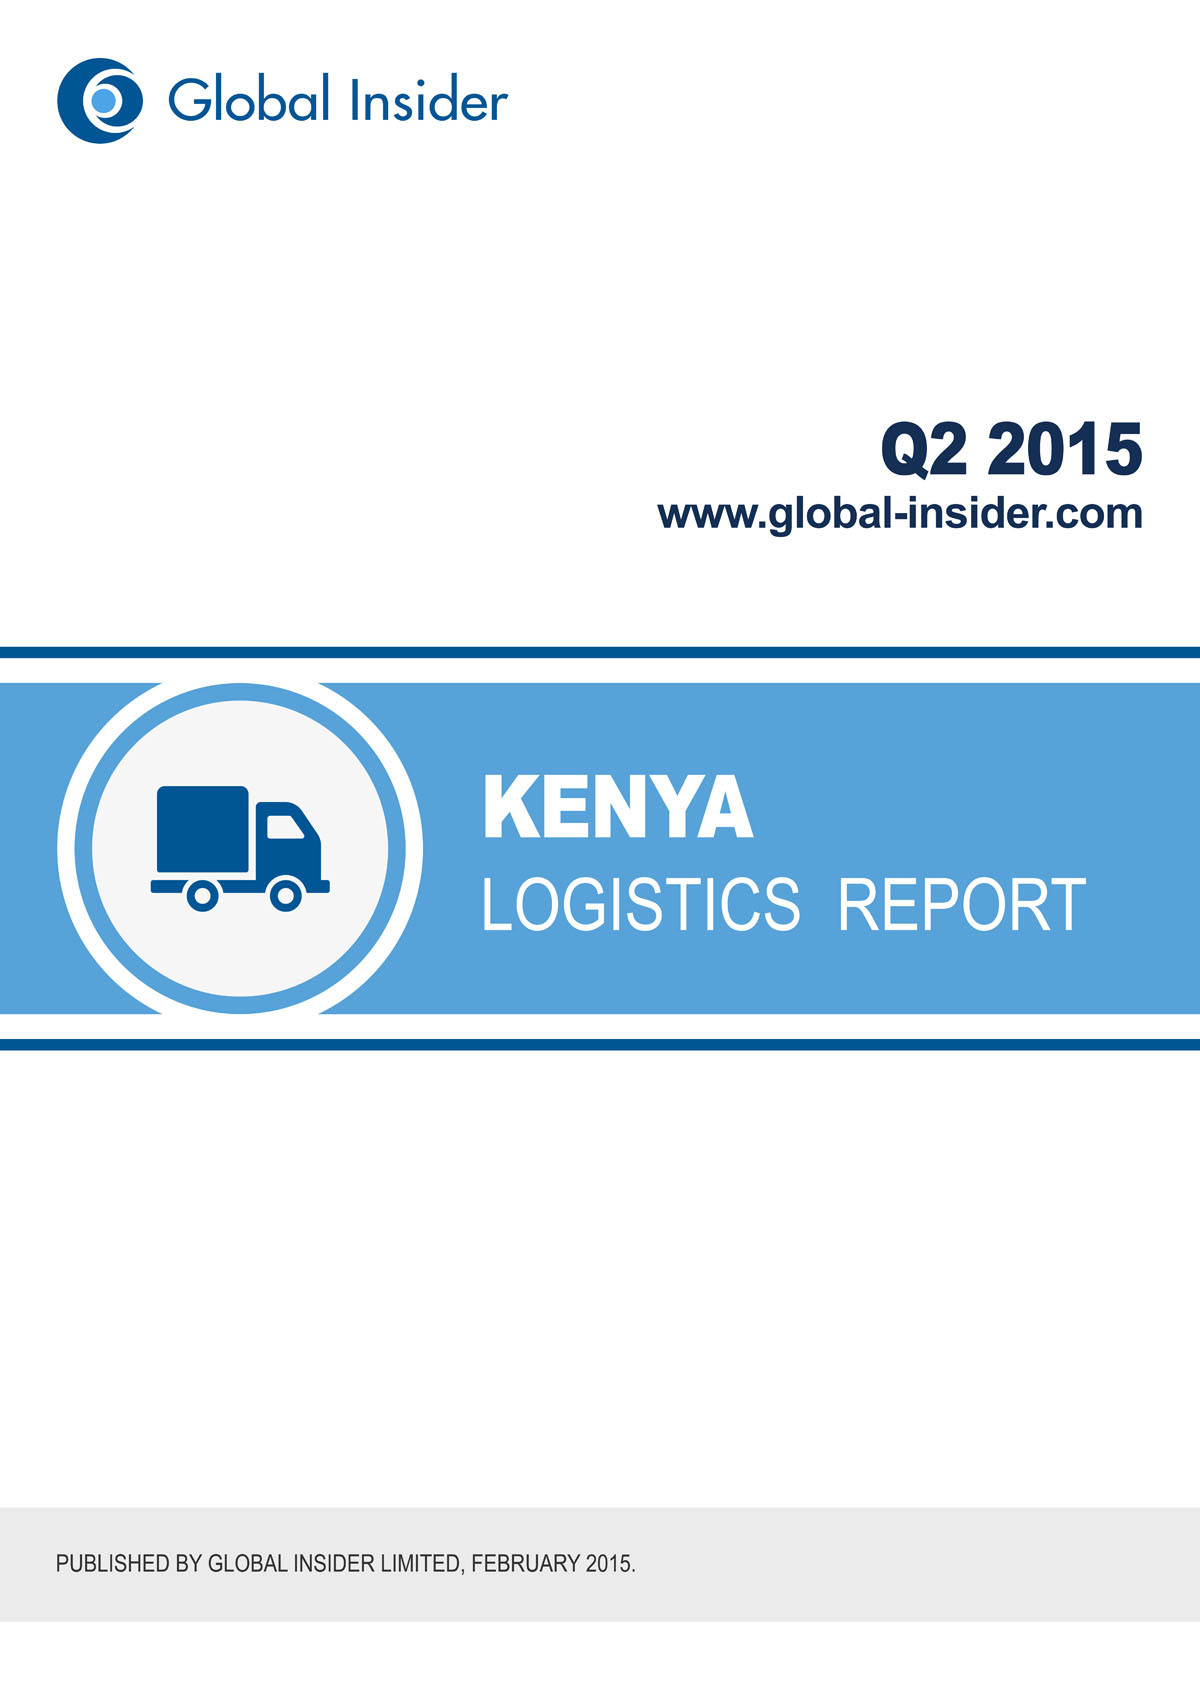 Kenya Logistics Report